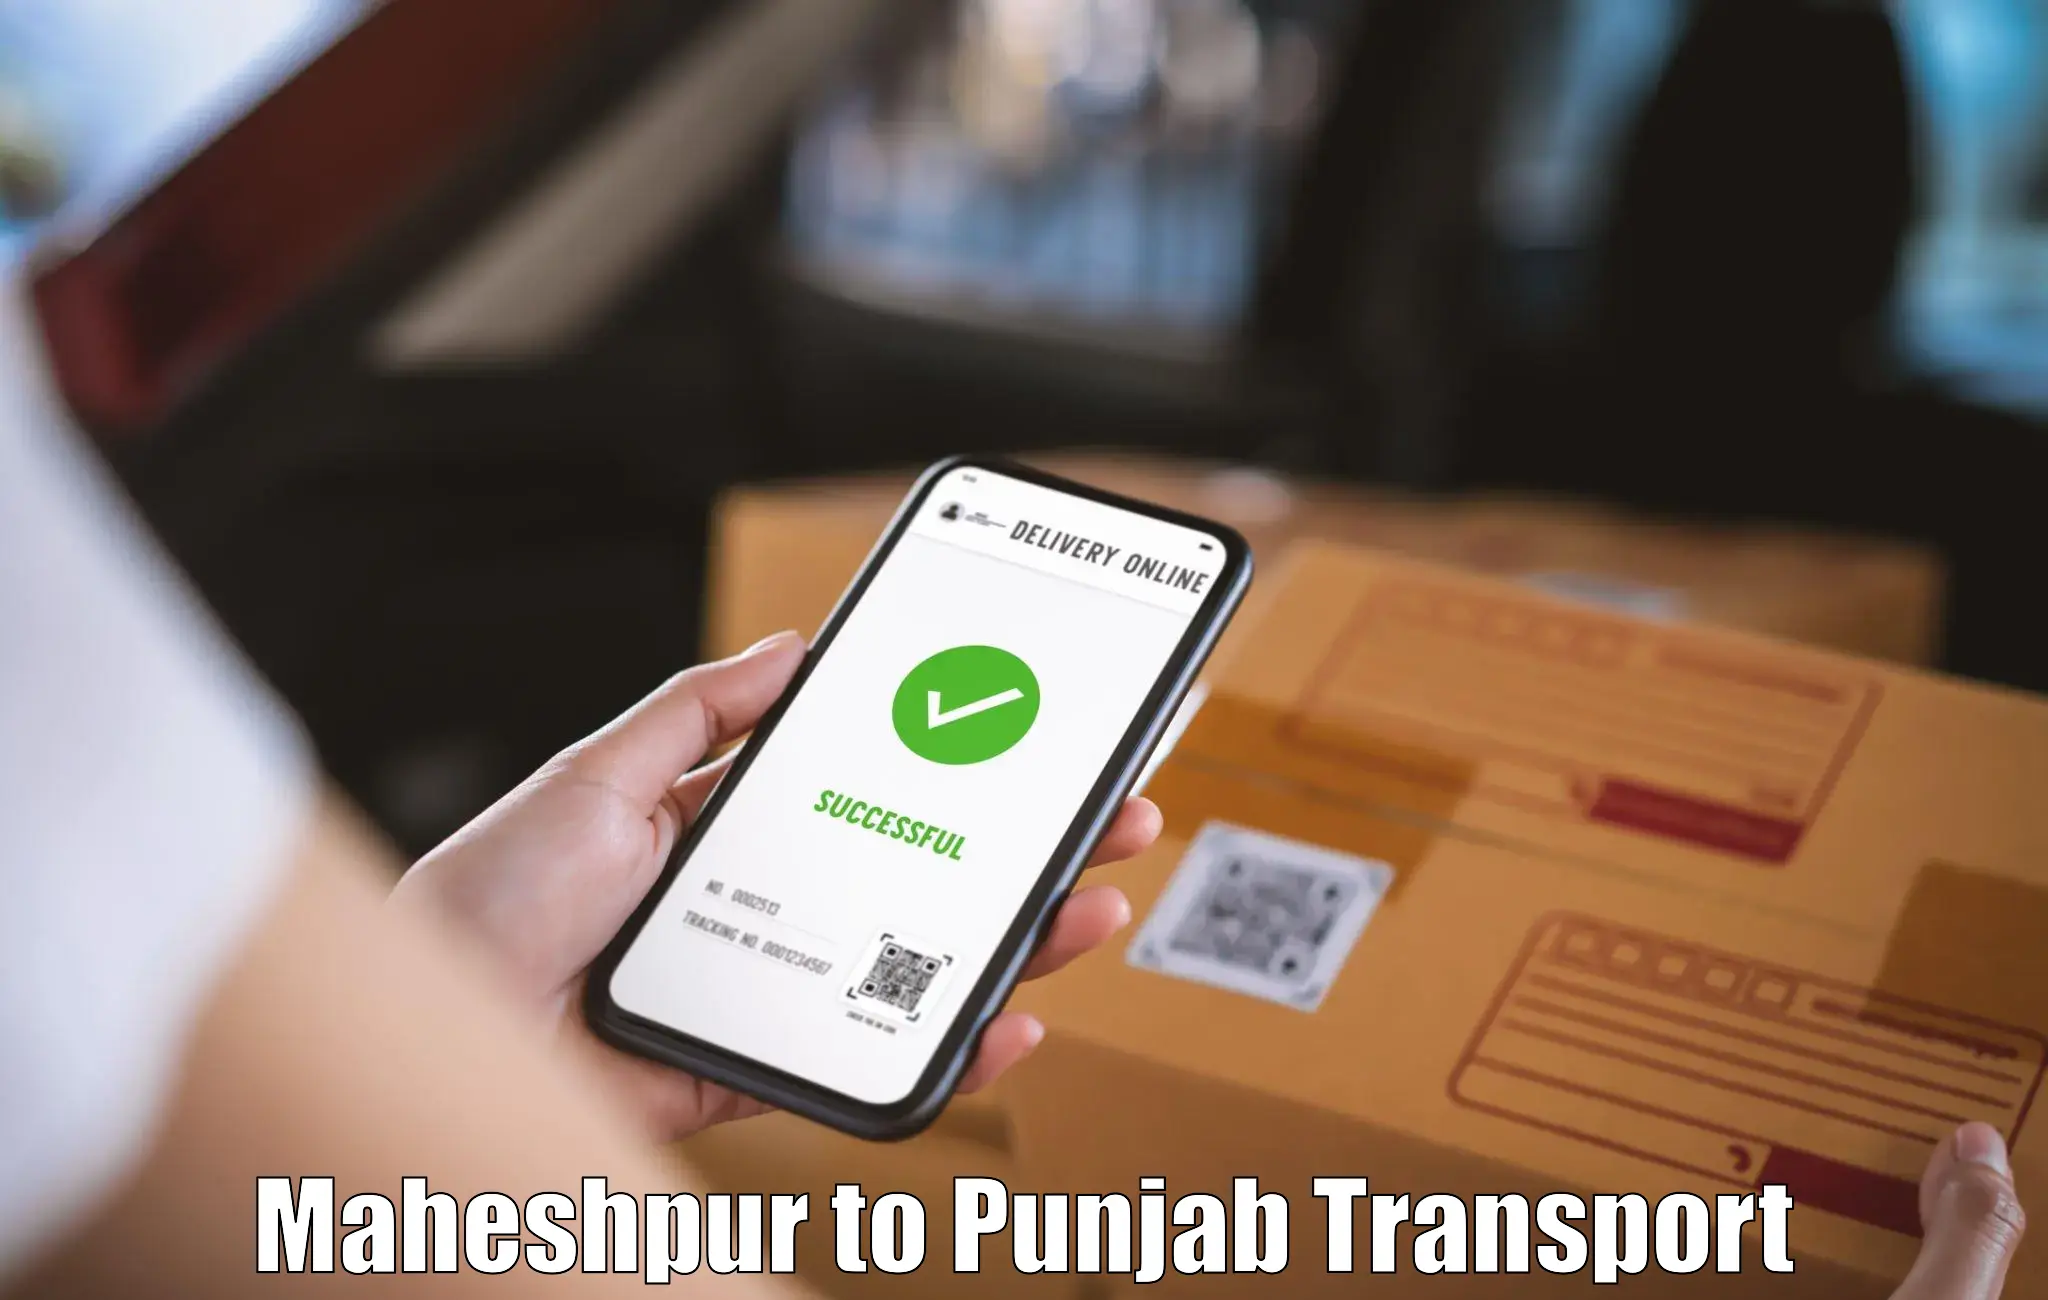 Delivery service Maheshpur to Faridkot